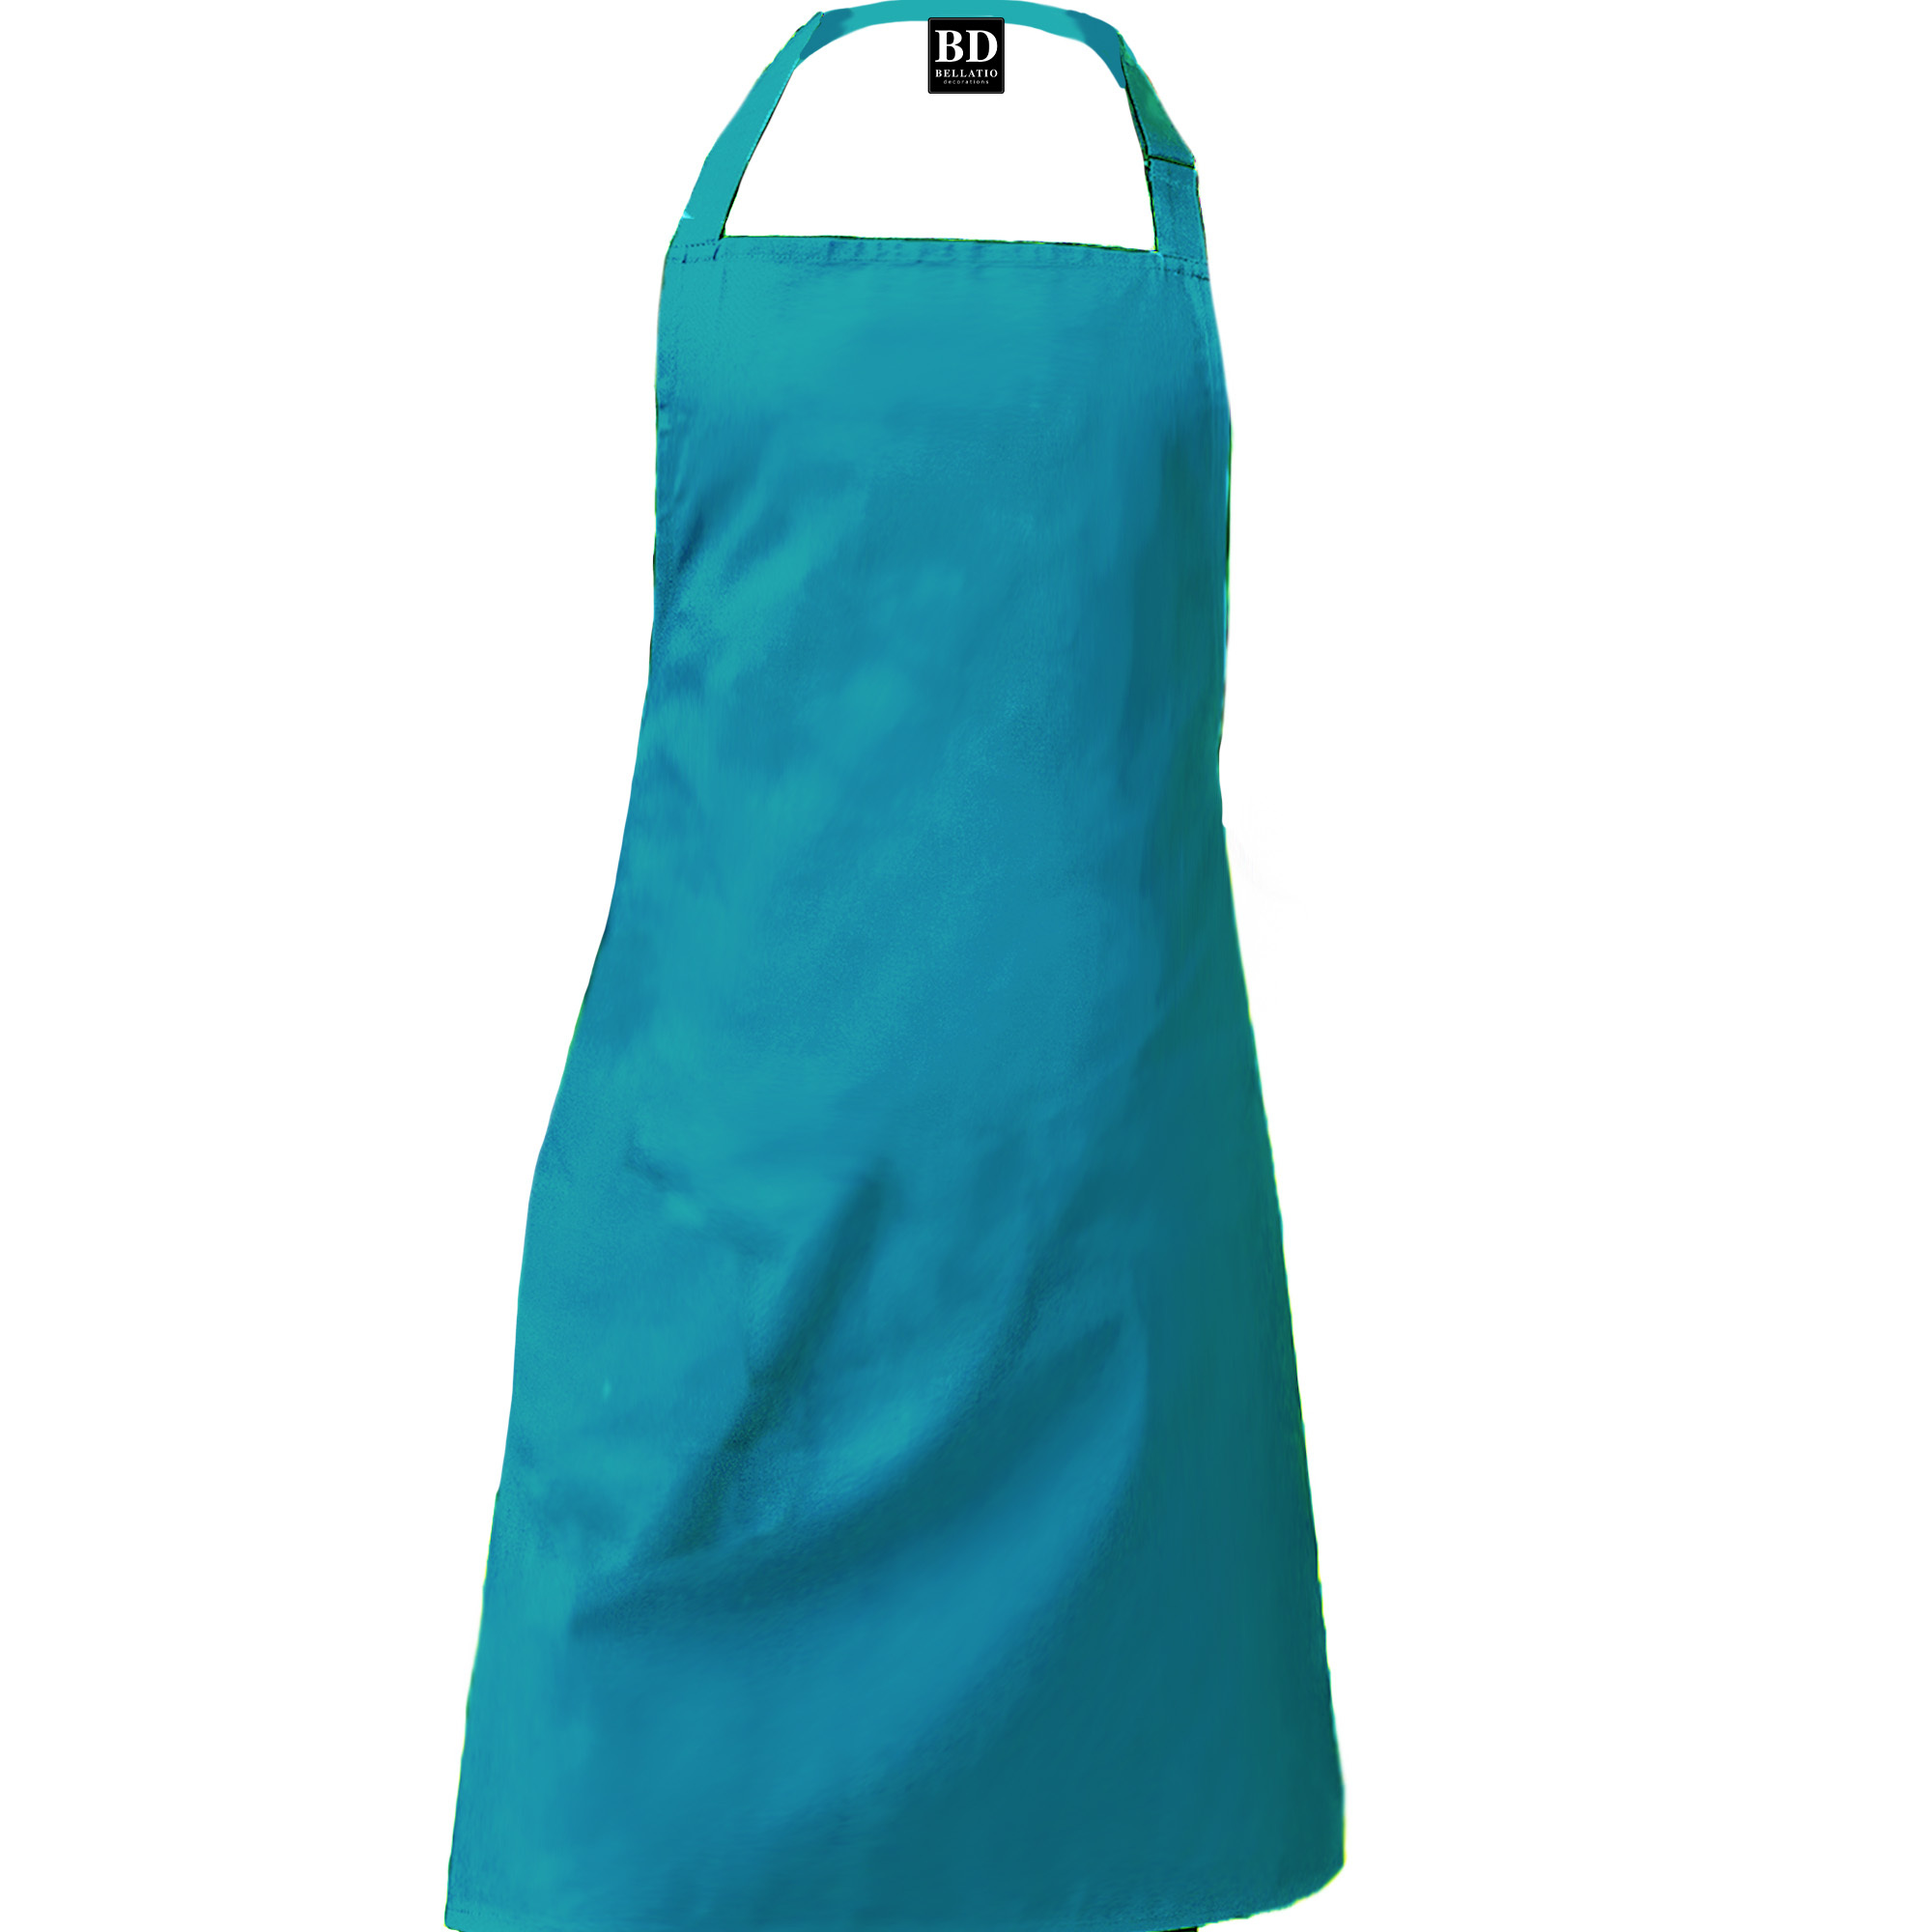 Top kokkie barbeque schort / keukenschort turquoise blauw heren